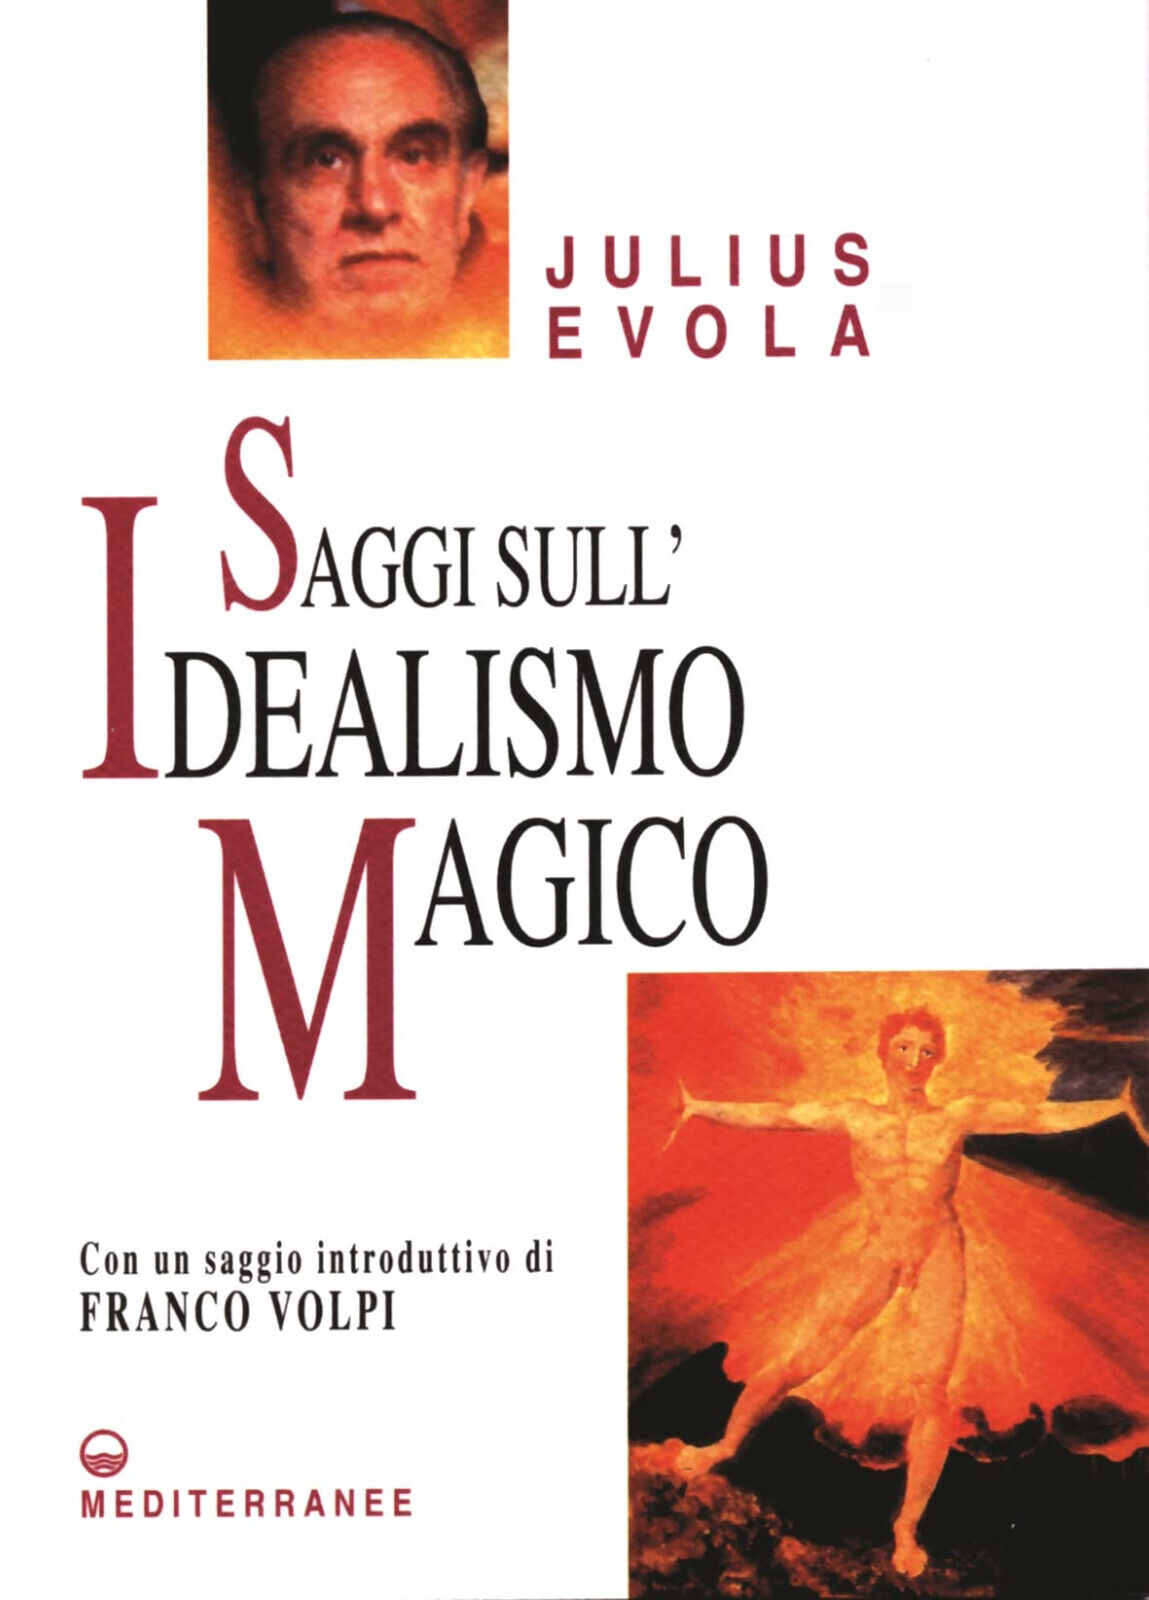 Saggi sull idealismo magico - Julius Evola - Edizioni Mediterranee, 2005 libro usato